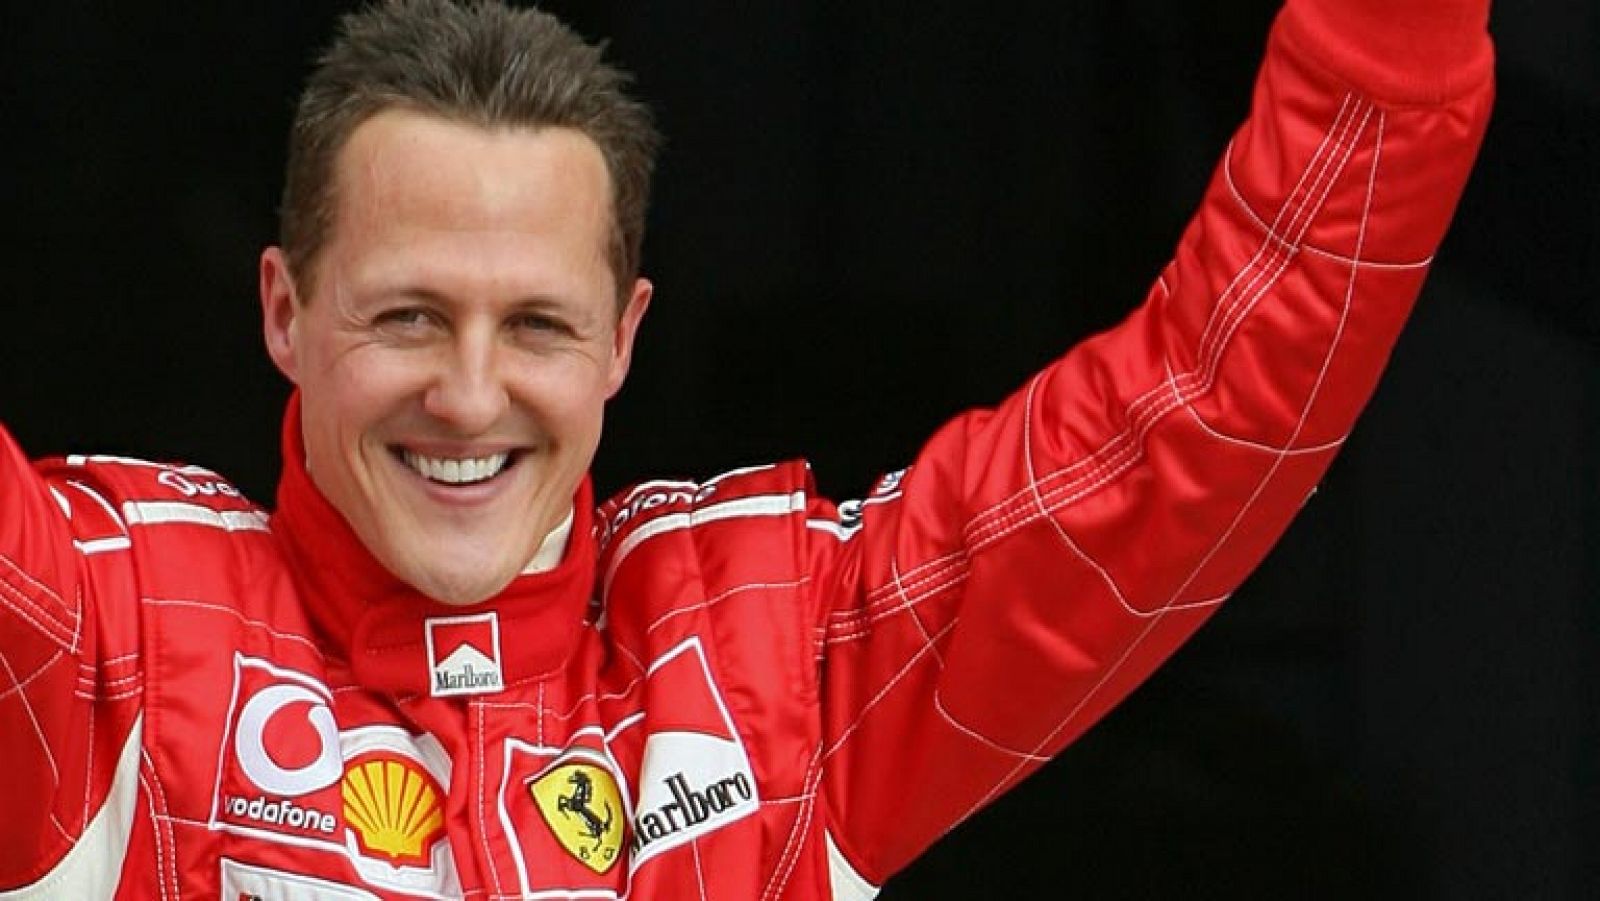 Schumacher "progresa" y "muestra momentos de consciencia"